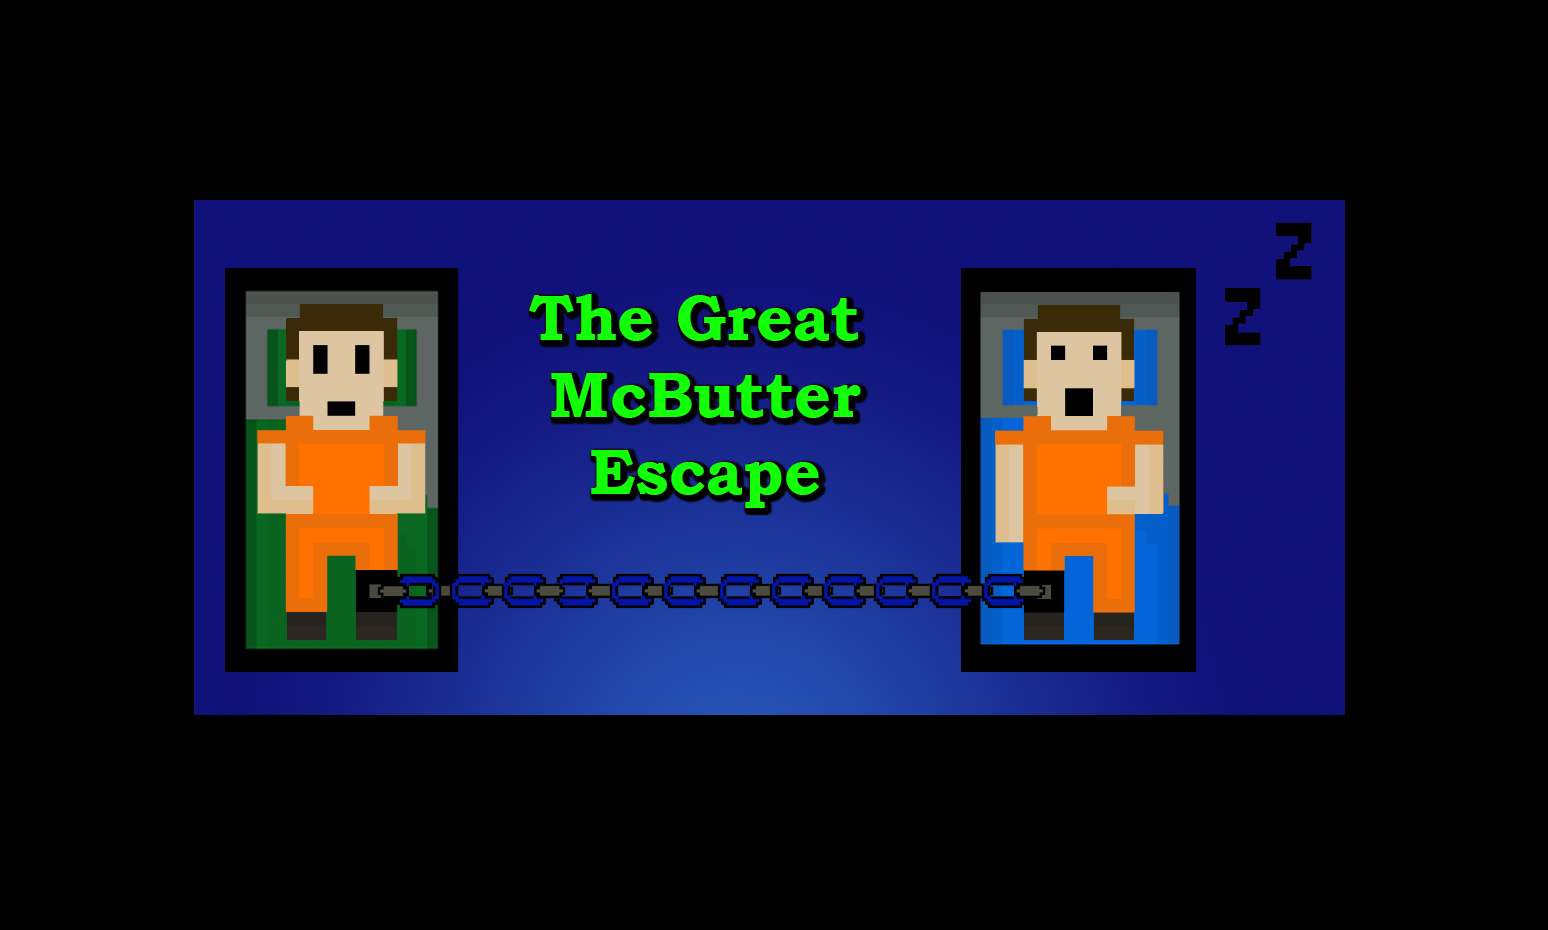 The Great McButter Escape